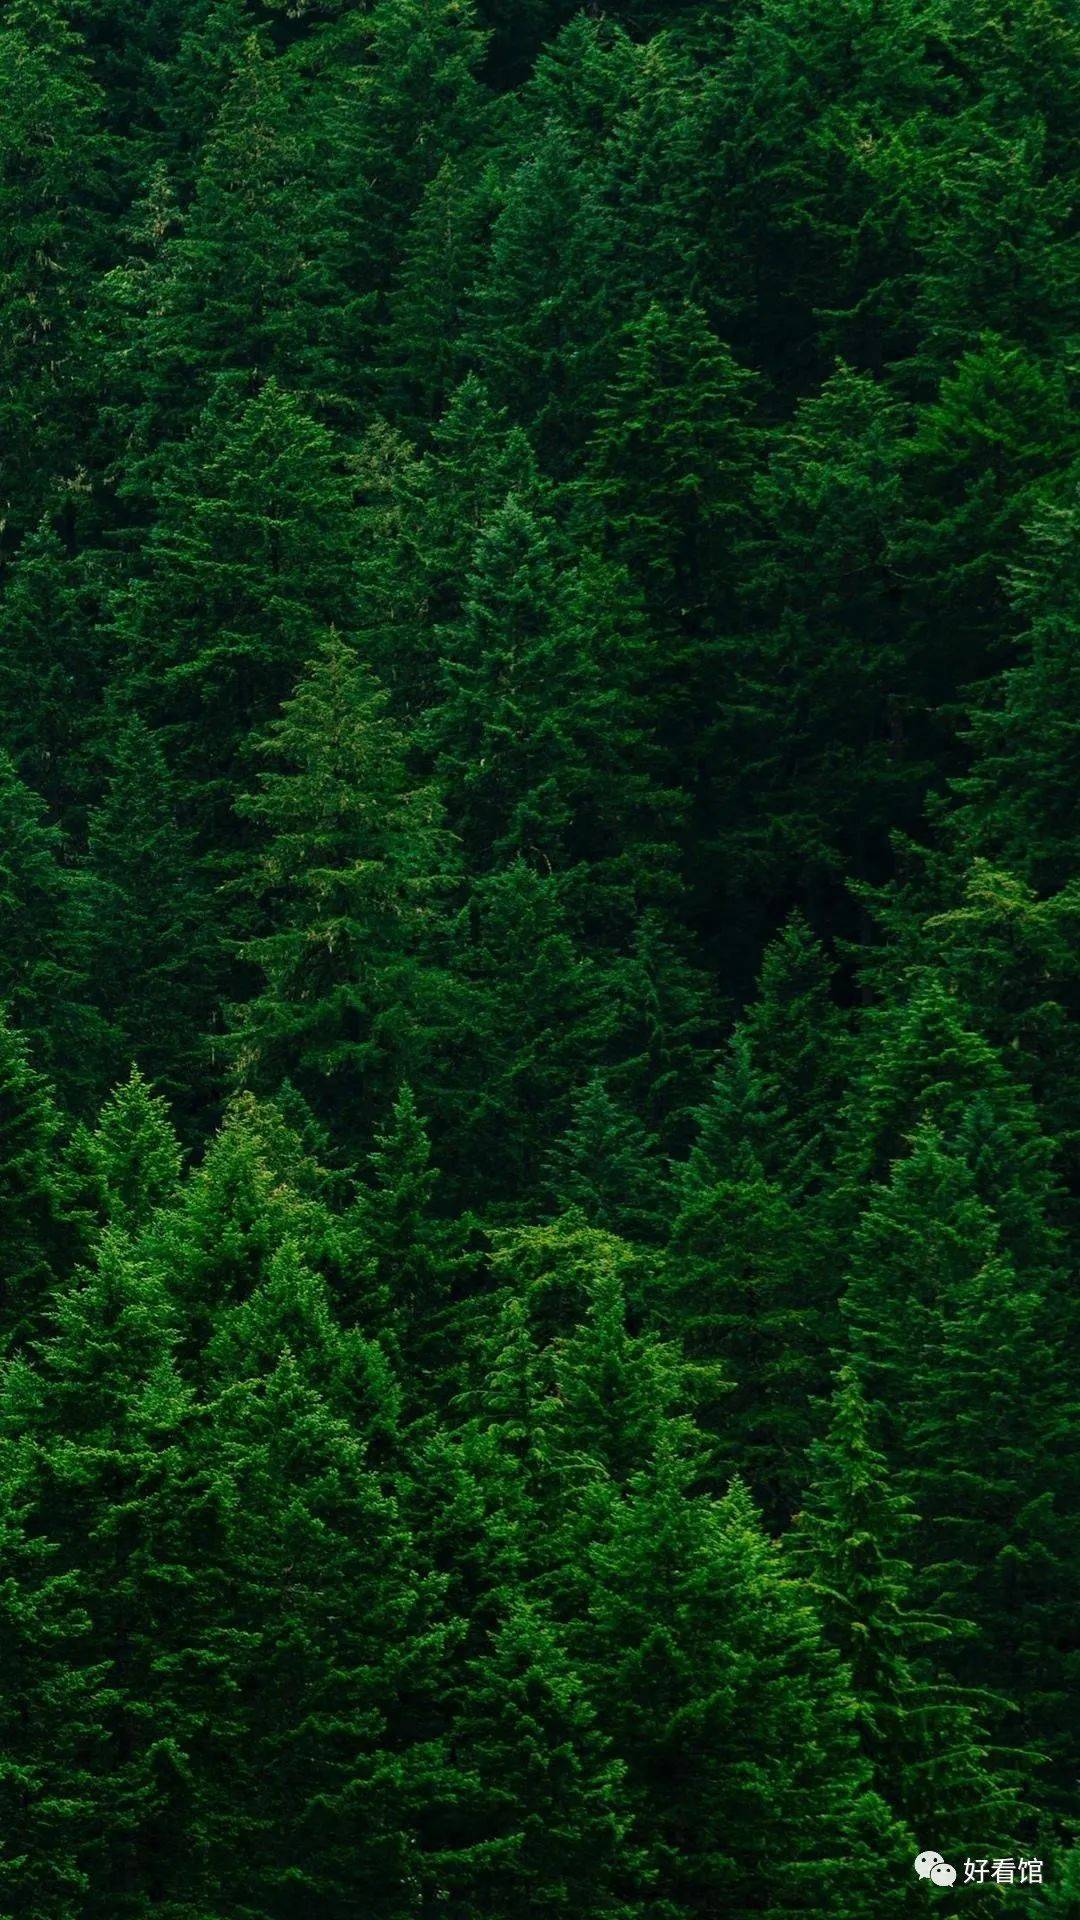 大自然绿色森林护眼风景壁纸|风景图片大全 大自然壁纸